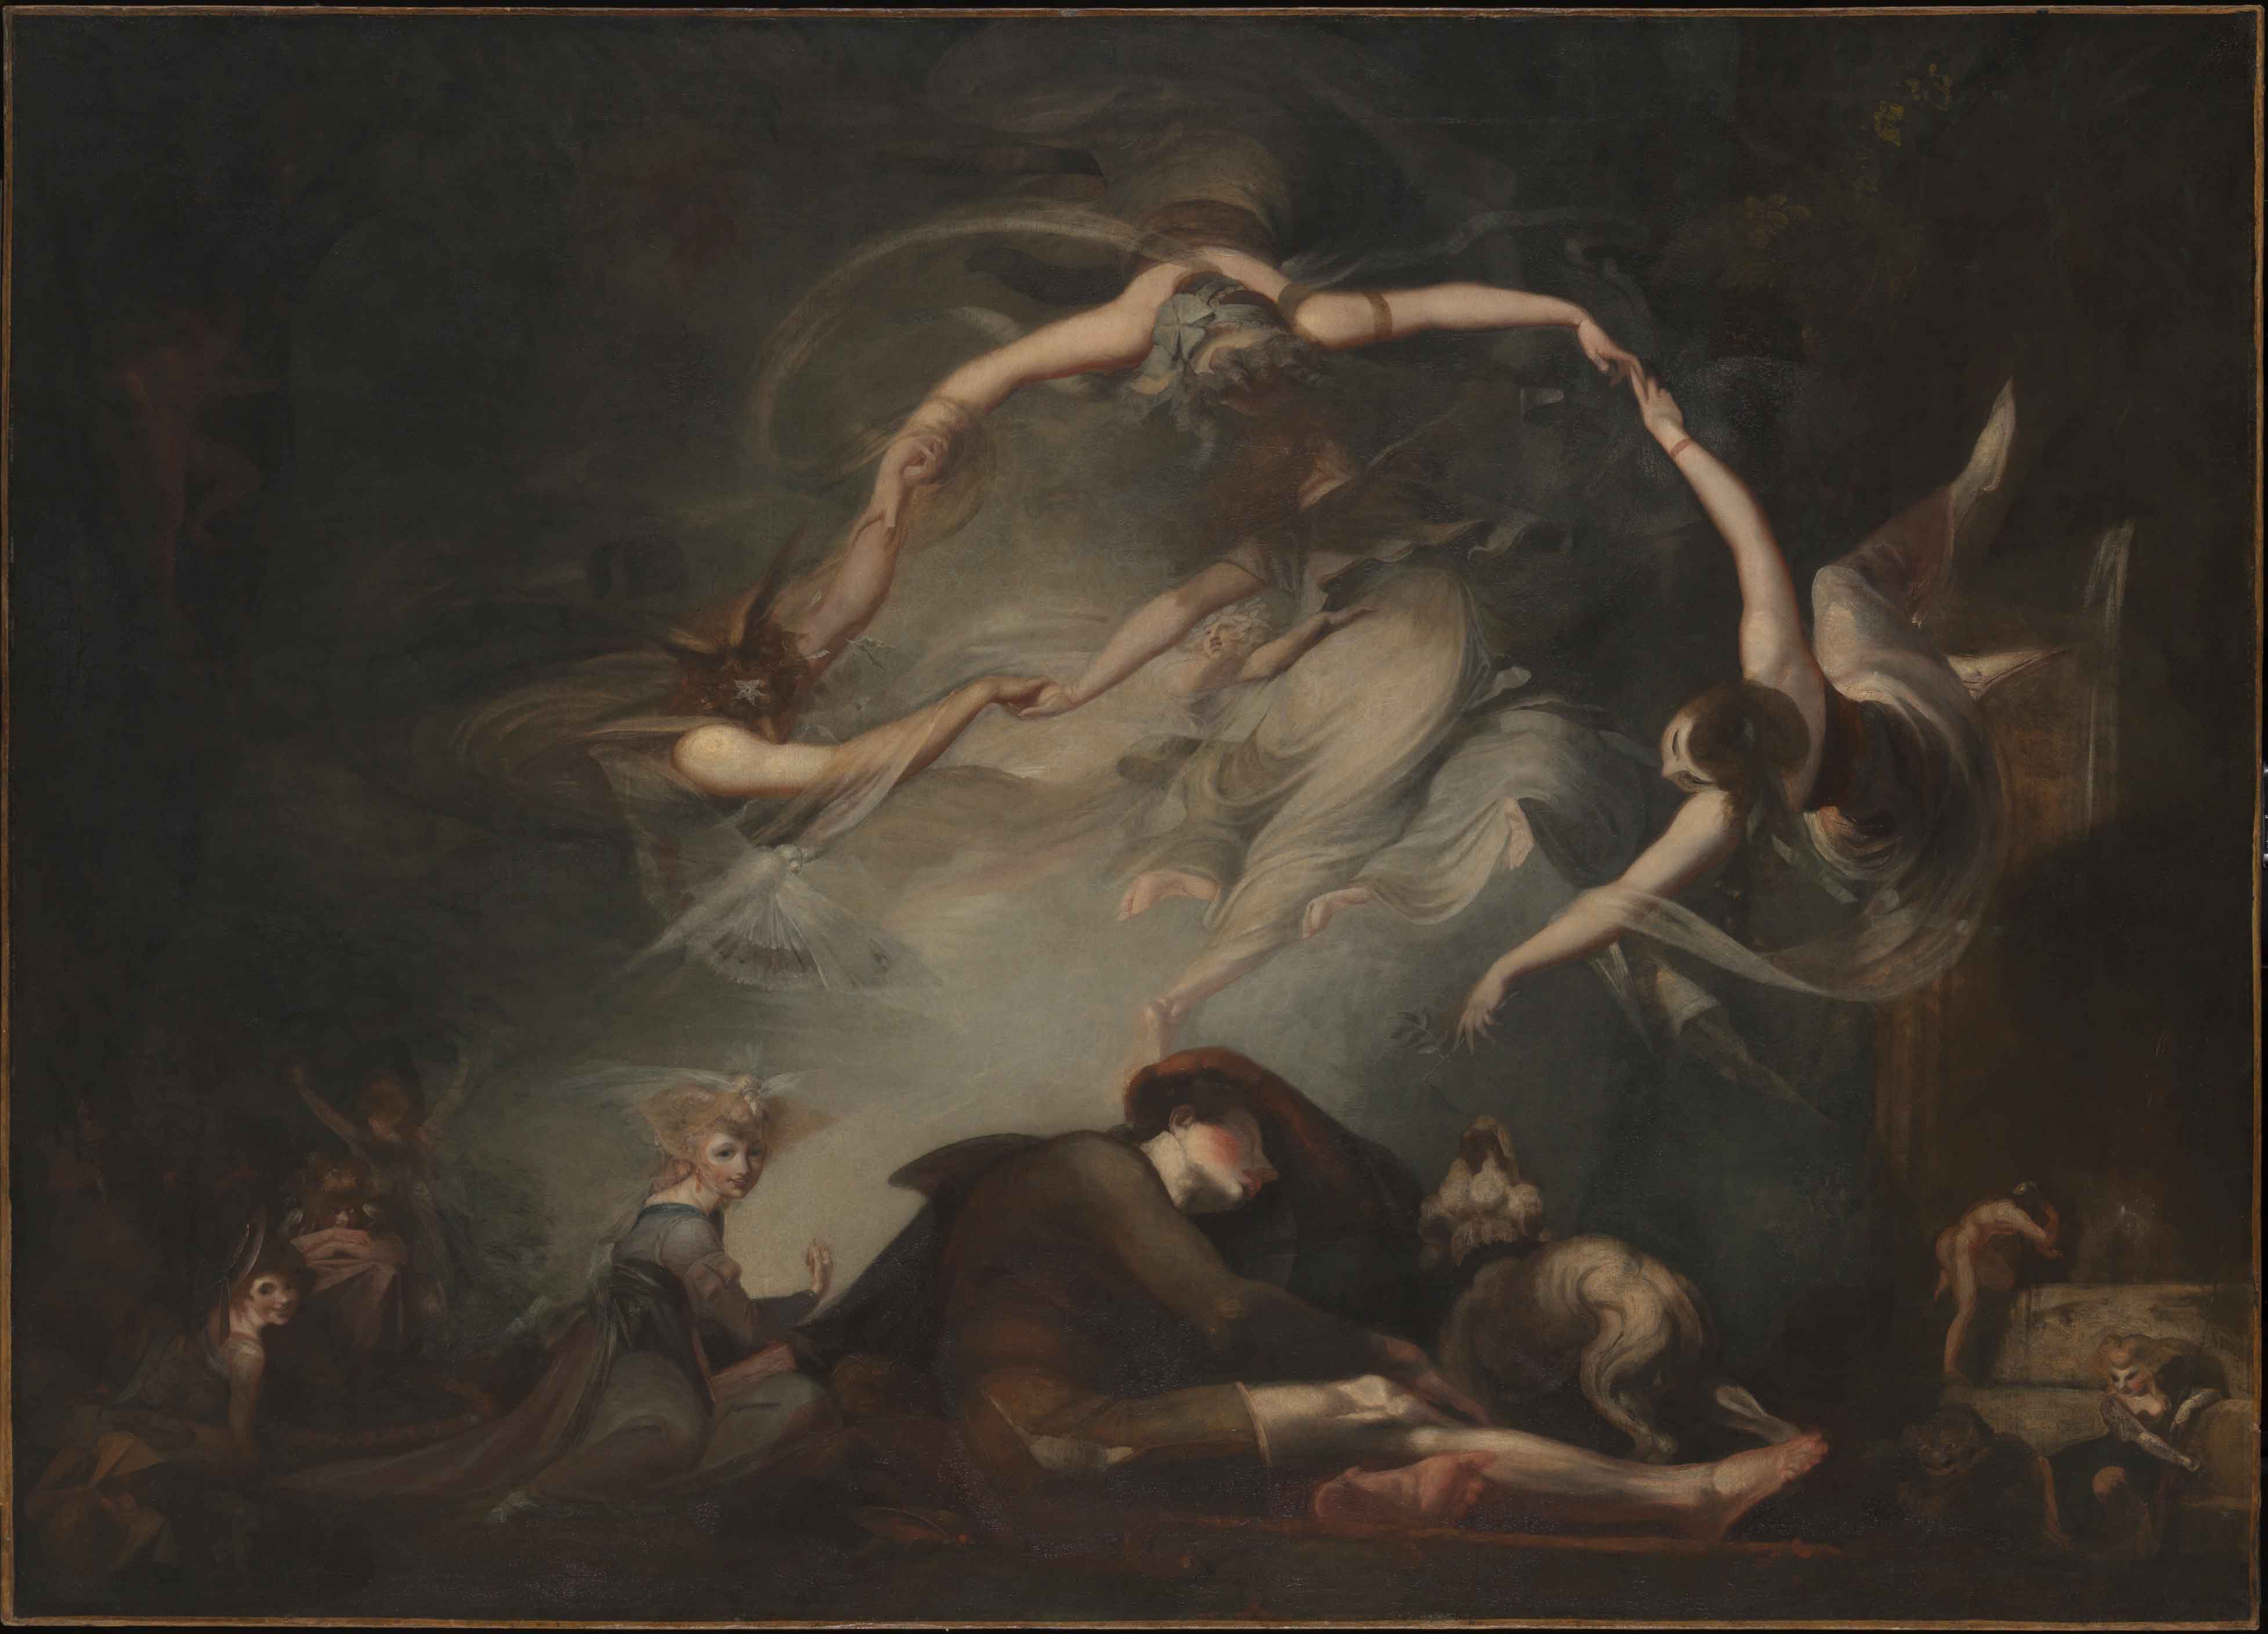 Johann Heinrich Füssli (1741 – 1825), Le songe du berger, 1793, huile sur toile, 154,3 x 215, 3 cm, Tate Britain, Londres, photo : Tate